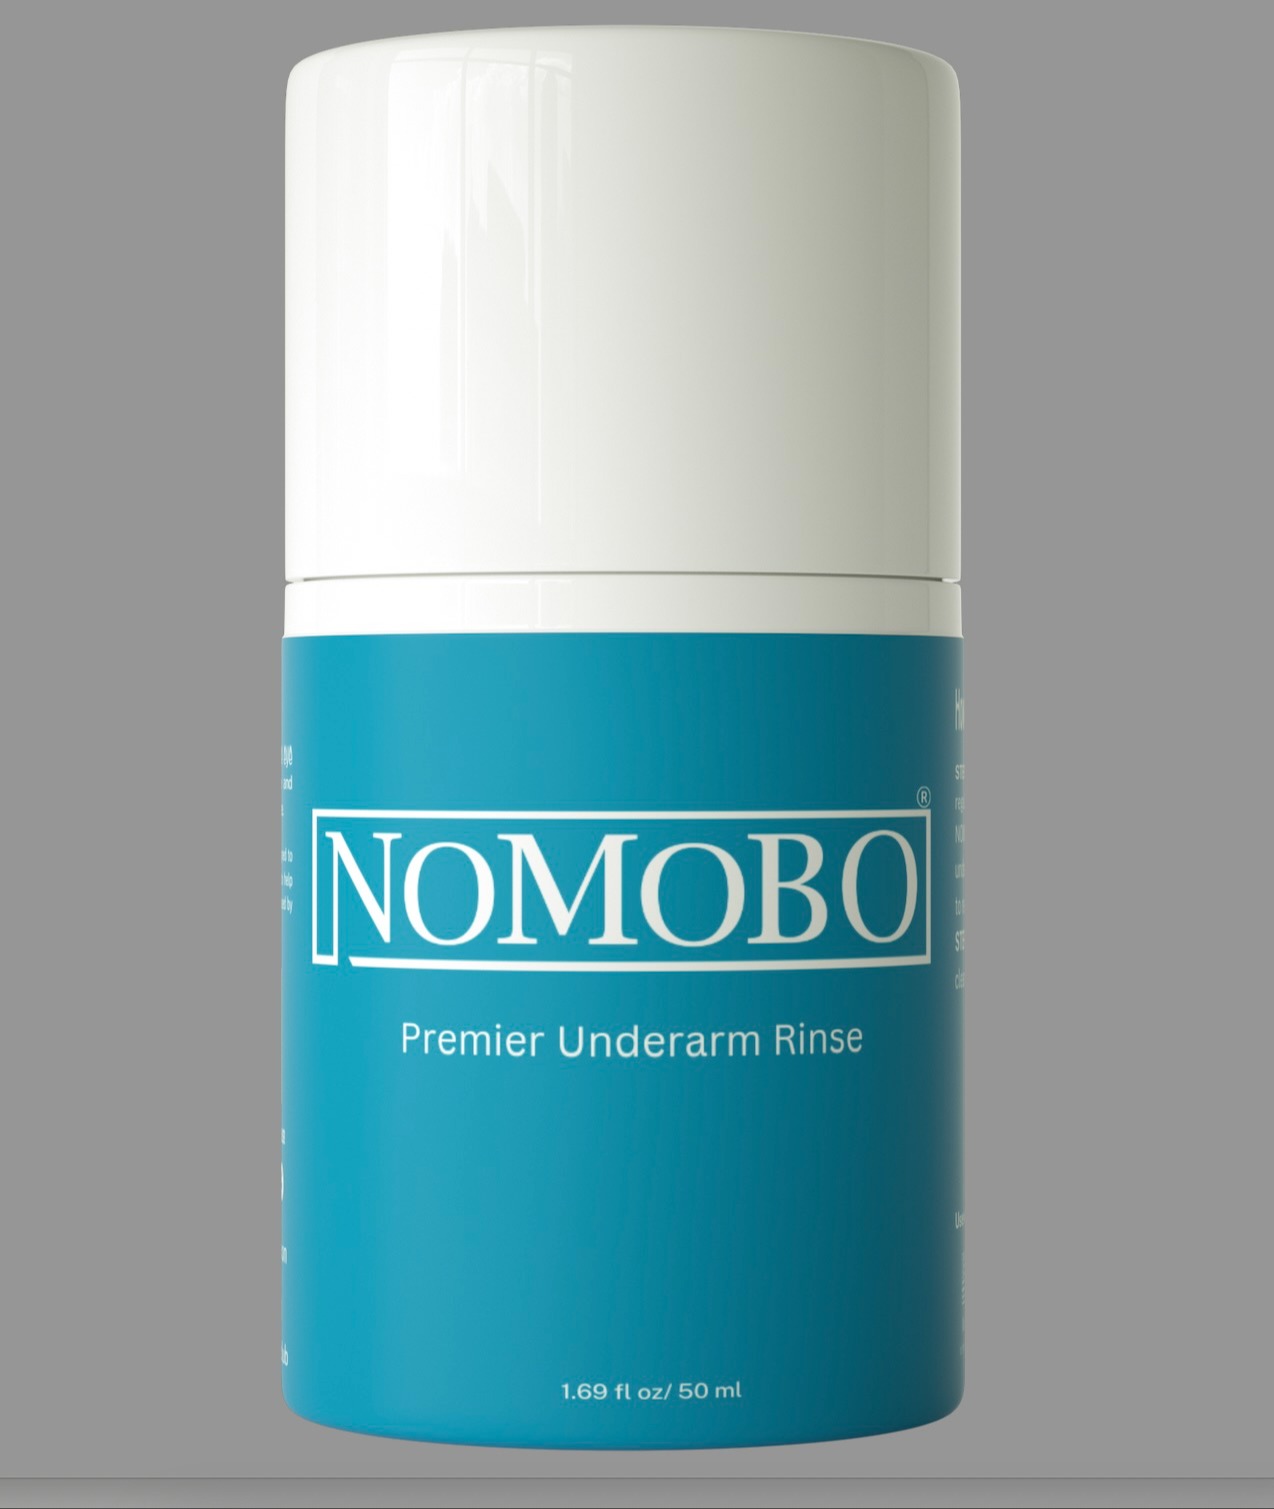 NOMOBO underarm rinse 159